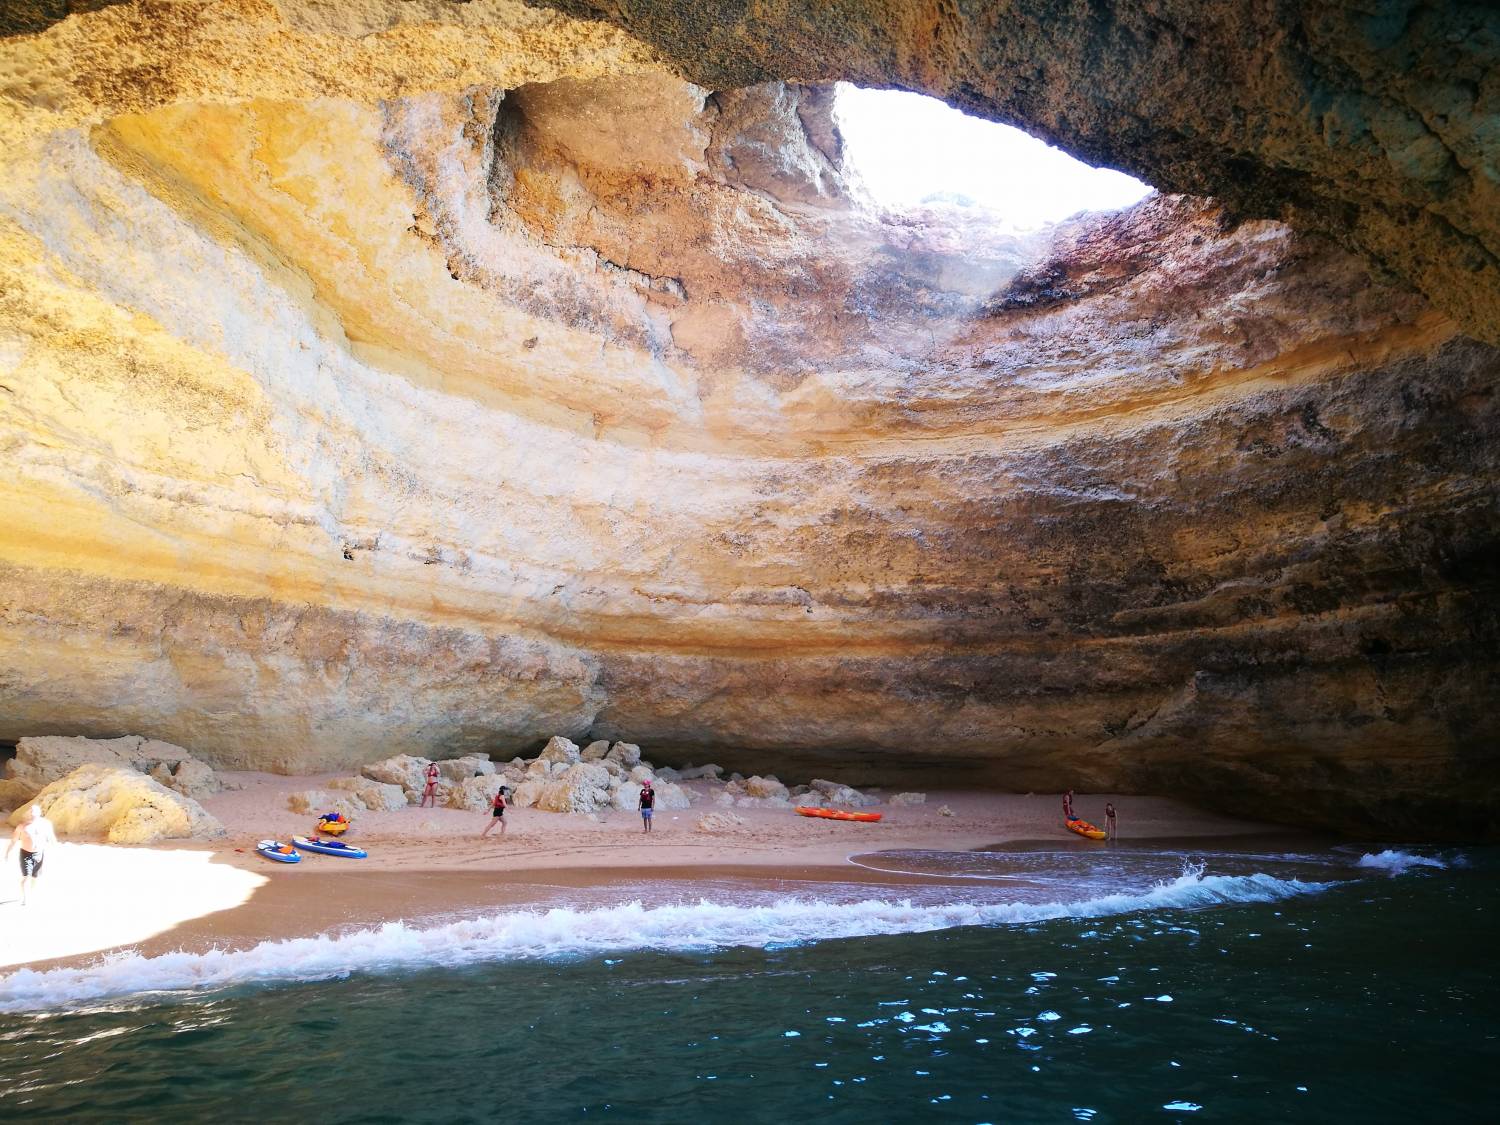 Caves & Coastline Boat Tours In Algarve - From Portimão To Benagil